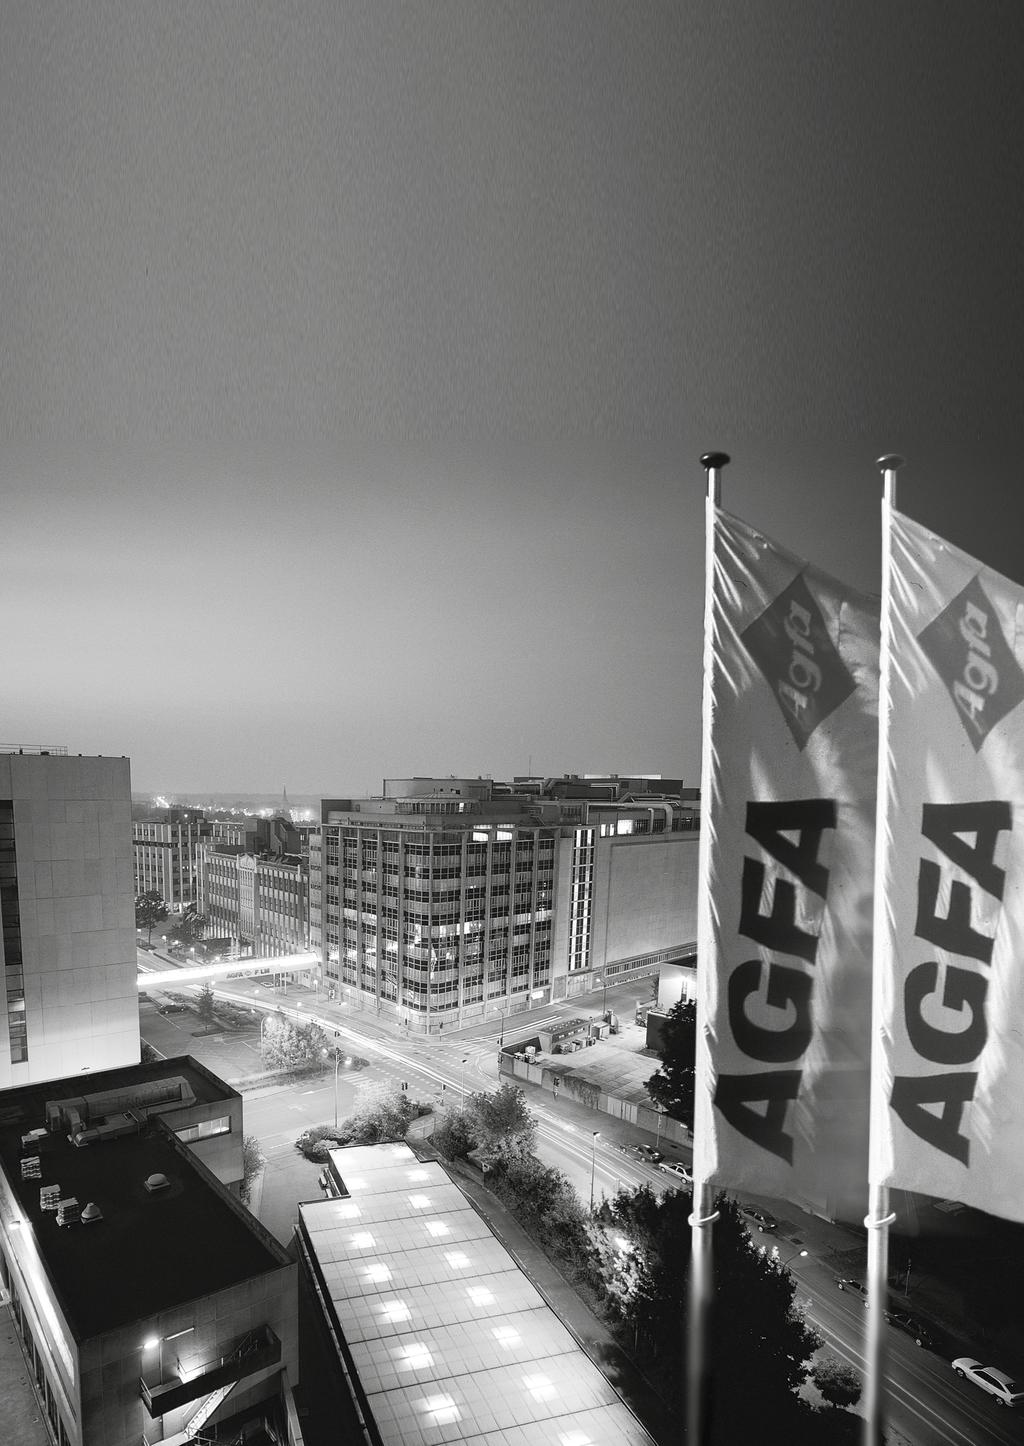 Bedrijfsprofiel De Agfa-Gevaert Groep ontwikkelt, produceert en verdeelt een uitgebreid portfolio van analoge en digitale